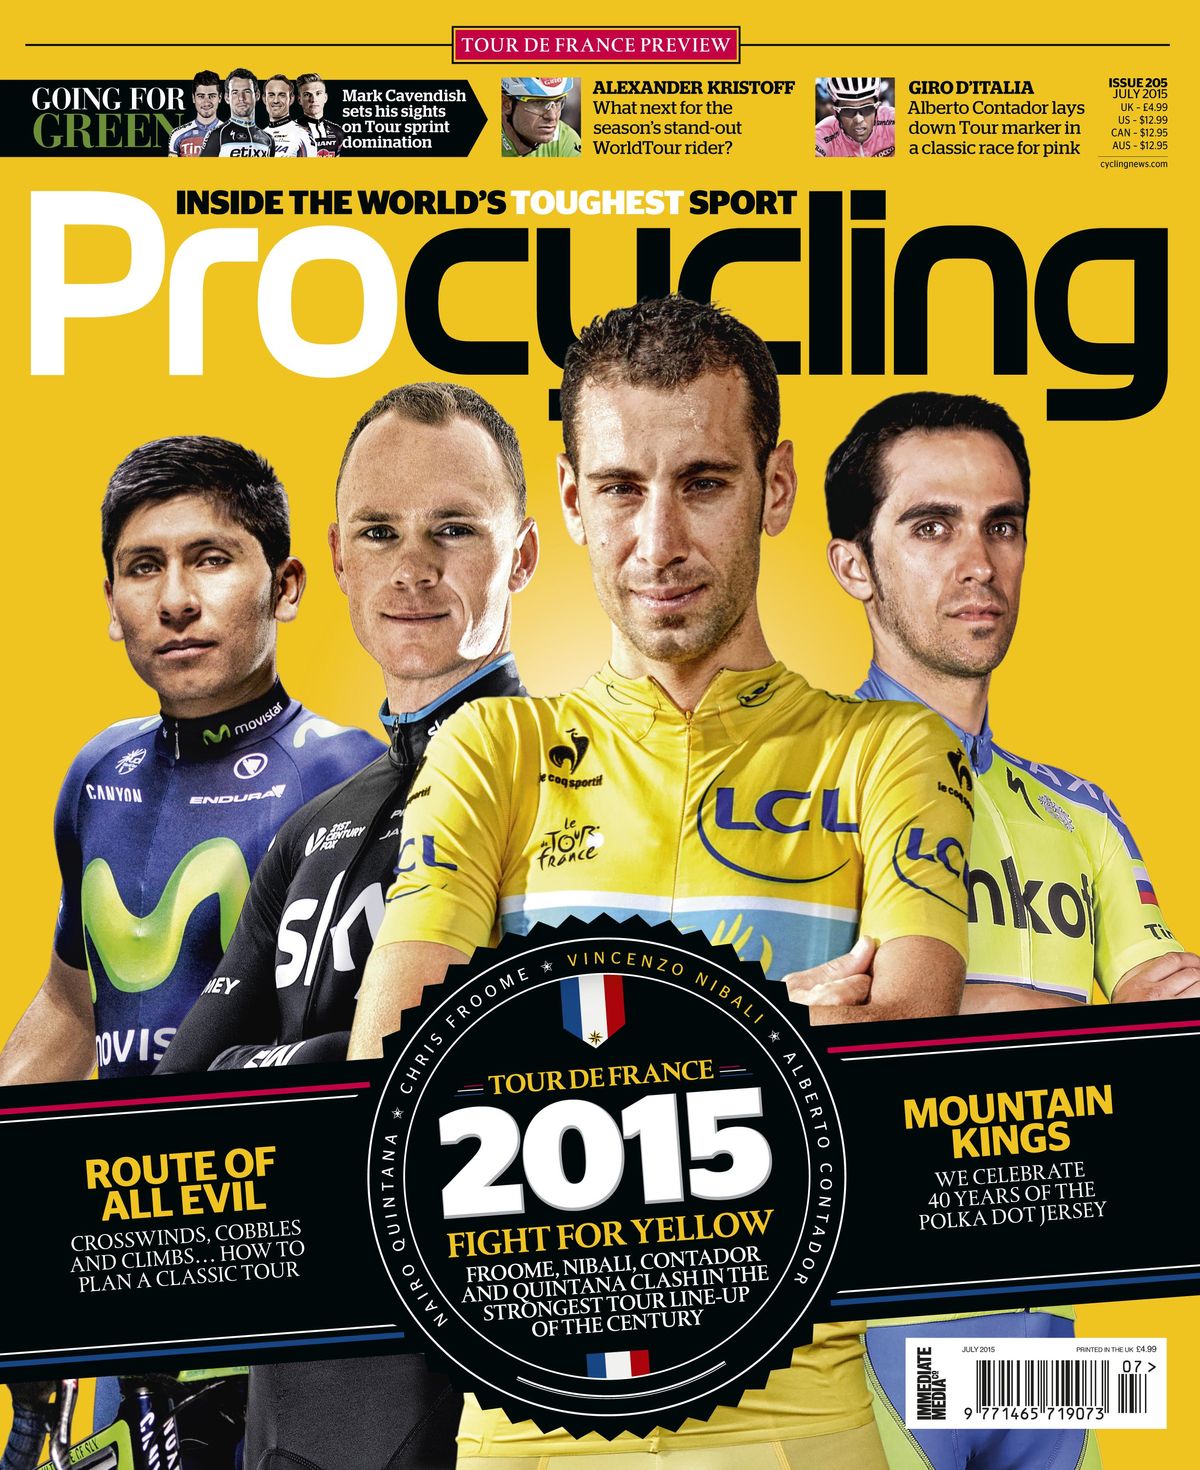 Tour de France stage previews | Cyclingnews